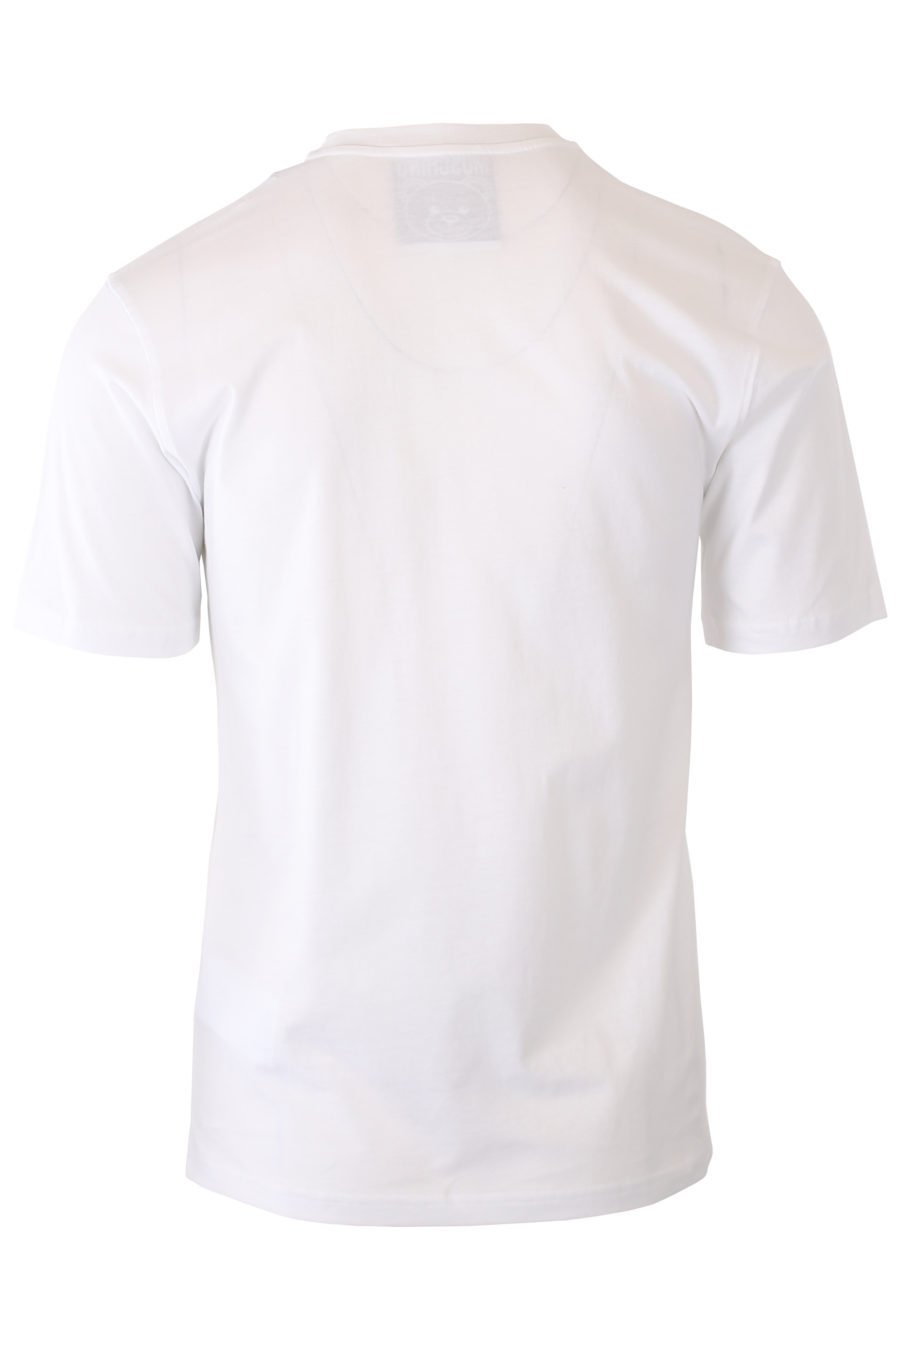 Weißes T-Shirt mit Roboterbären-Logo - IMG 9284